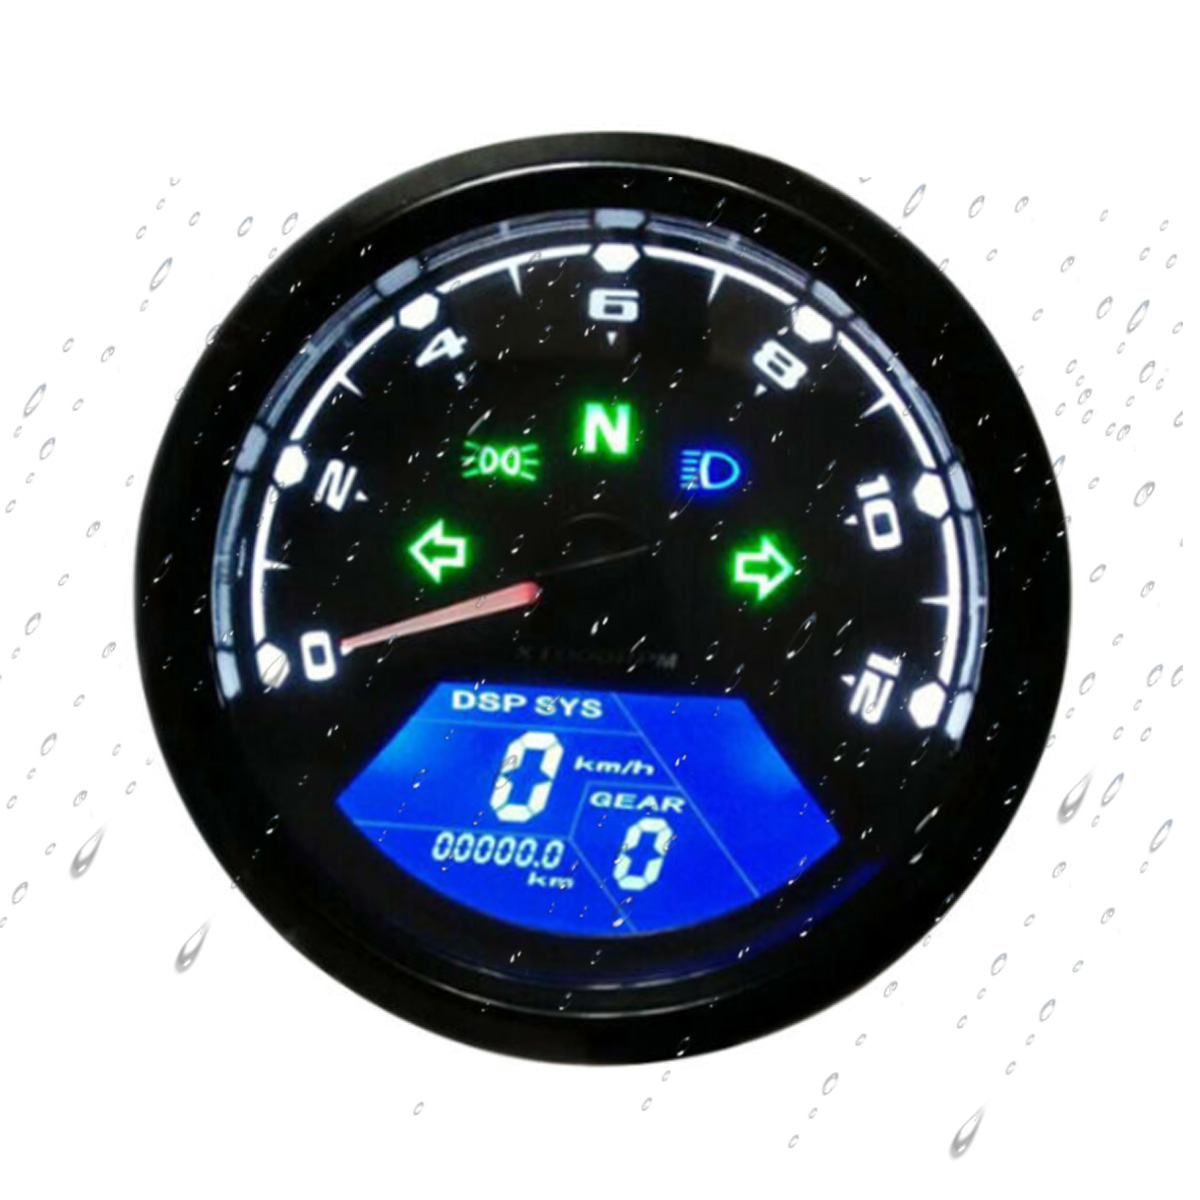 Universal KMH Motorcycle Fuel Level Meter Digital Odometer Speedometer Gauge 12V